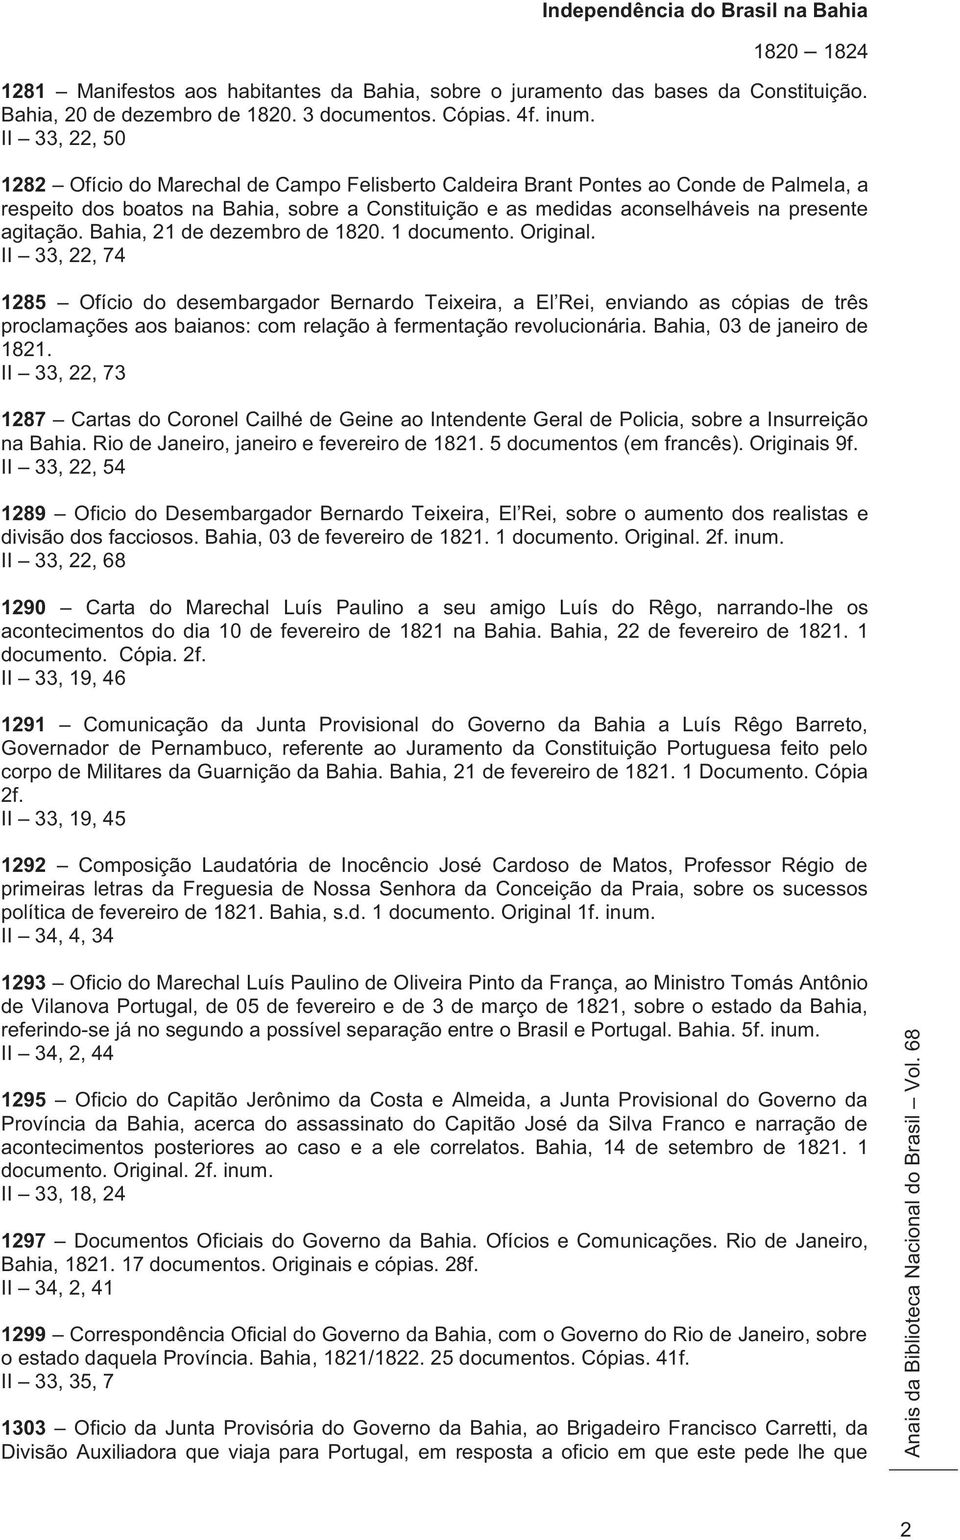 agitação. Bahia, 21 de dezembro de 1820. 1 documento. Original.